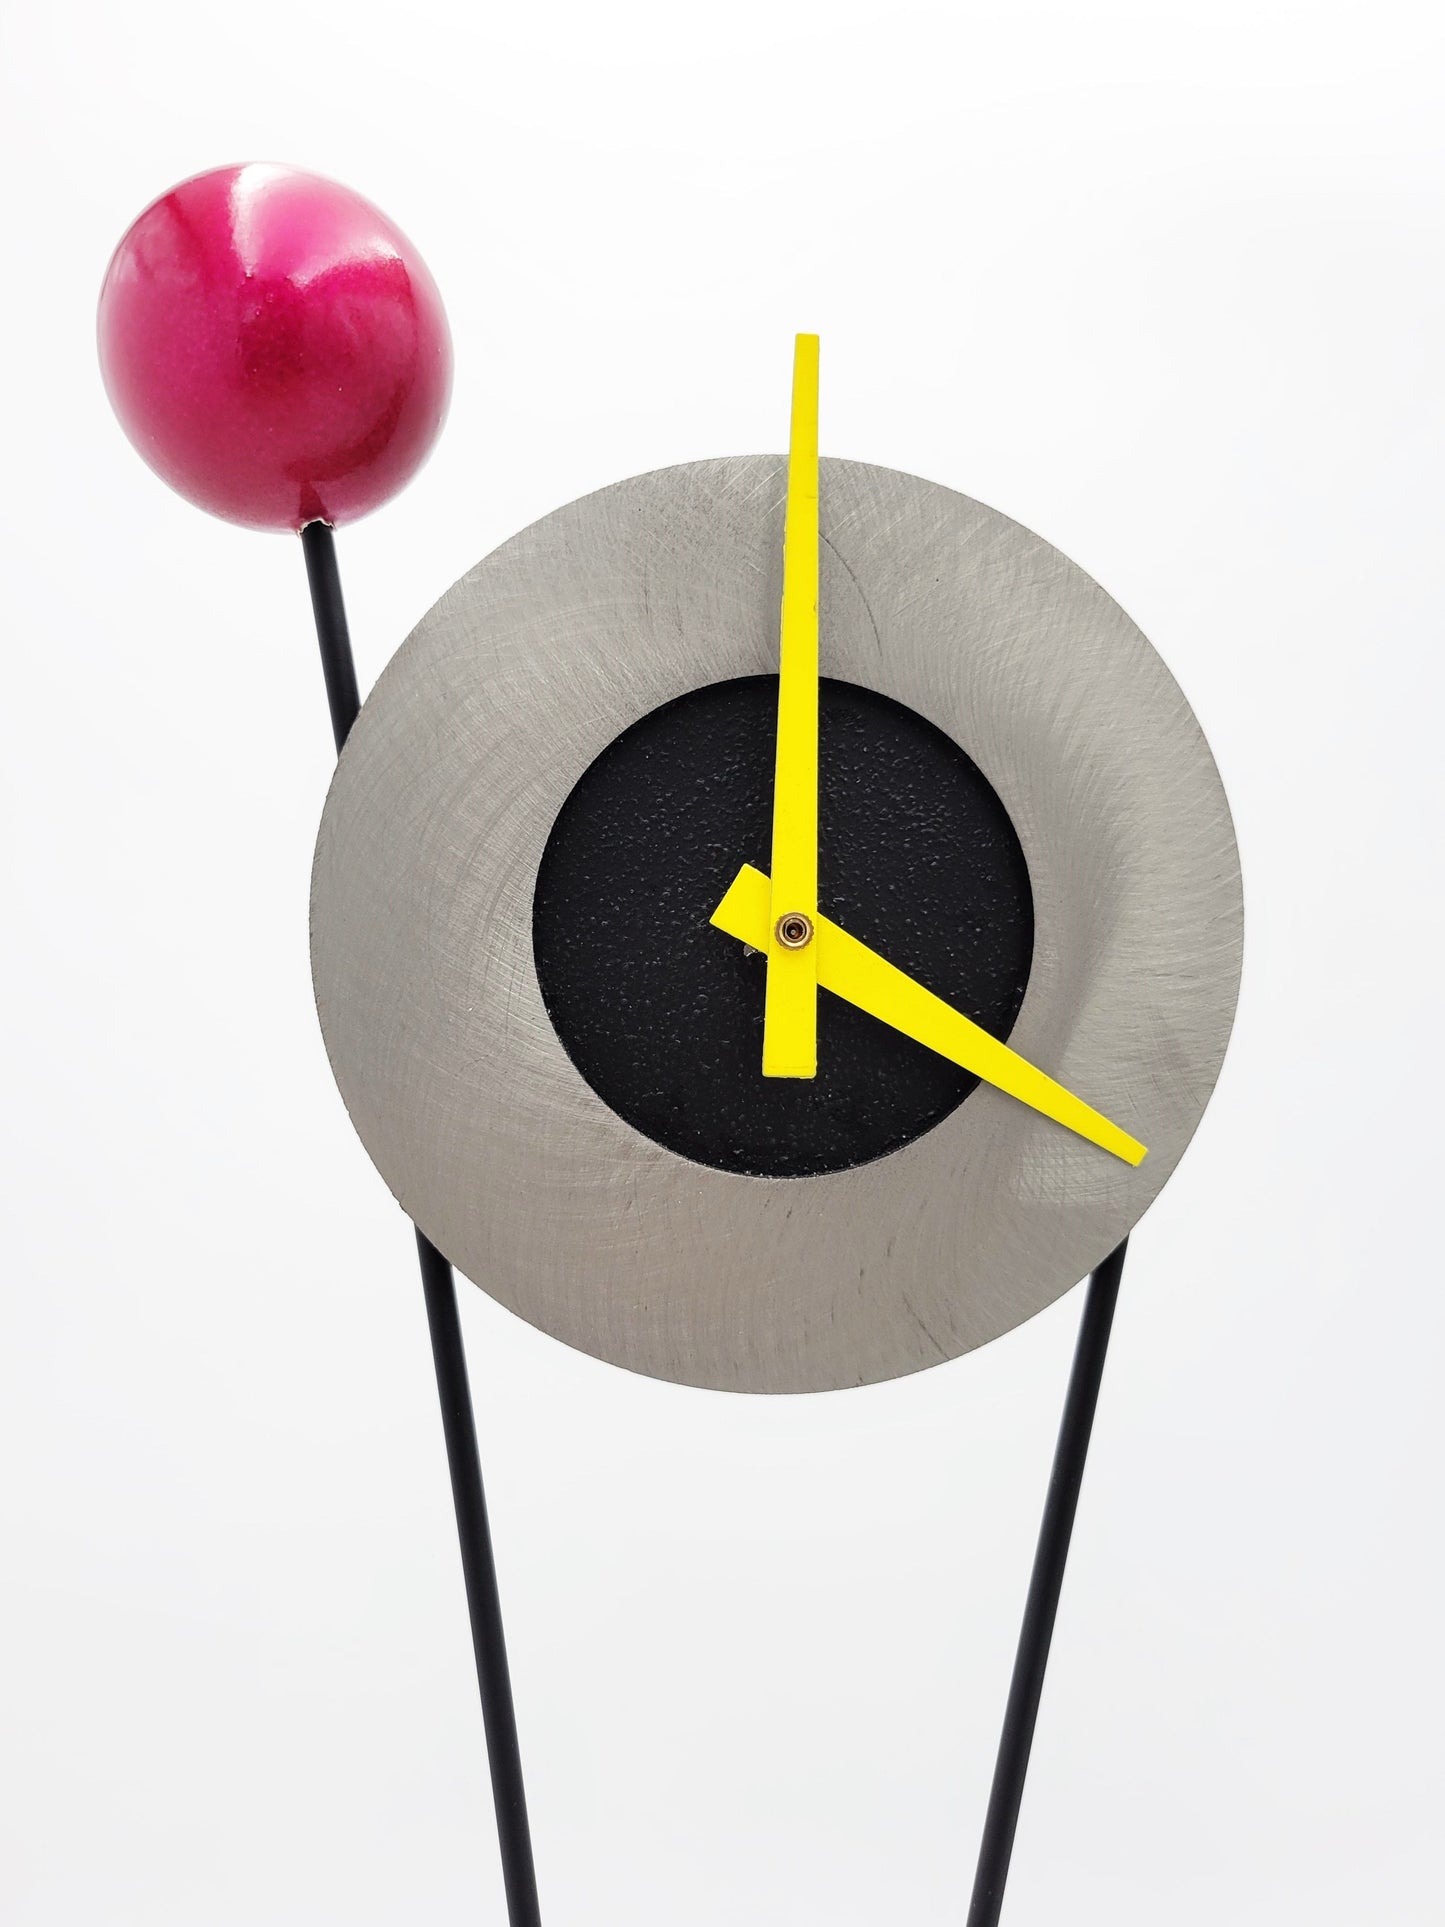 Rick Martin Clock and Candleholder Rick Martin Abstract Modernist Pop Art Memphis Style Clock & Candleholder